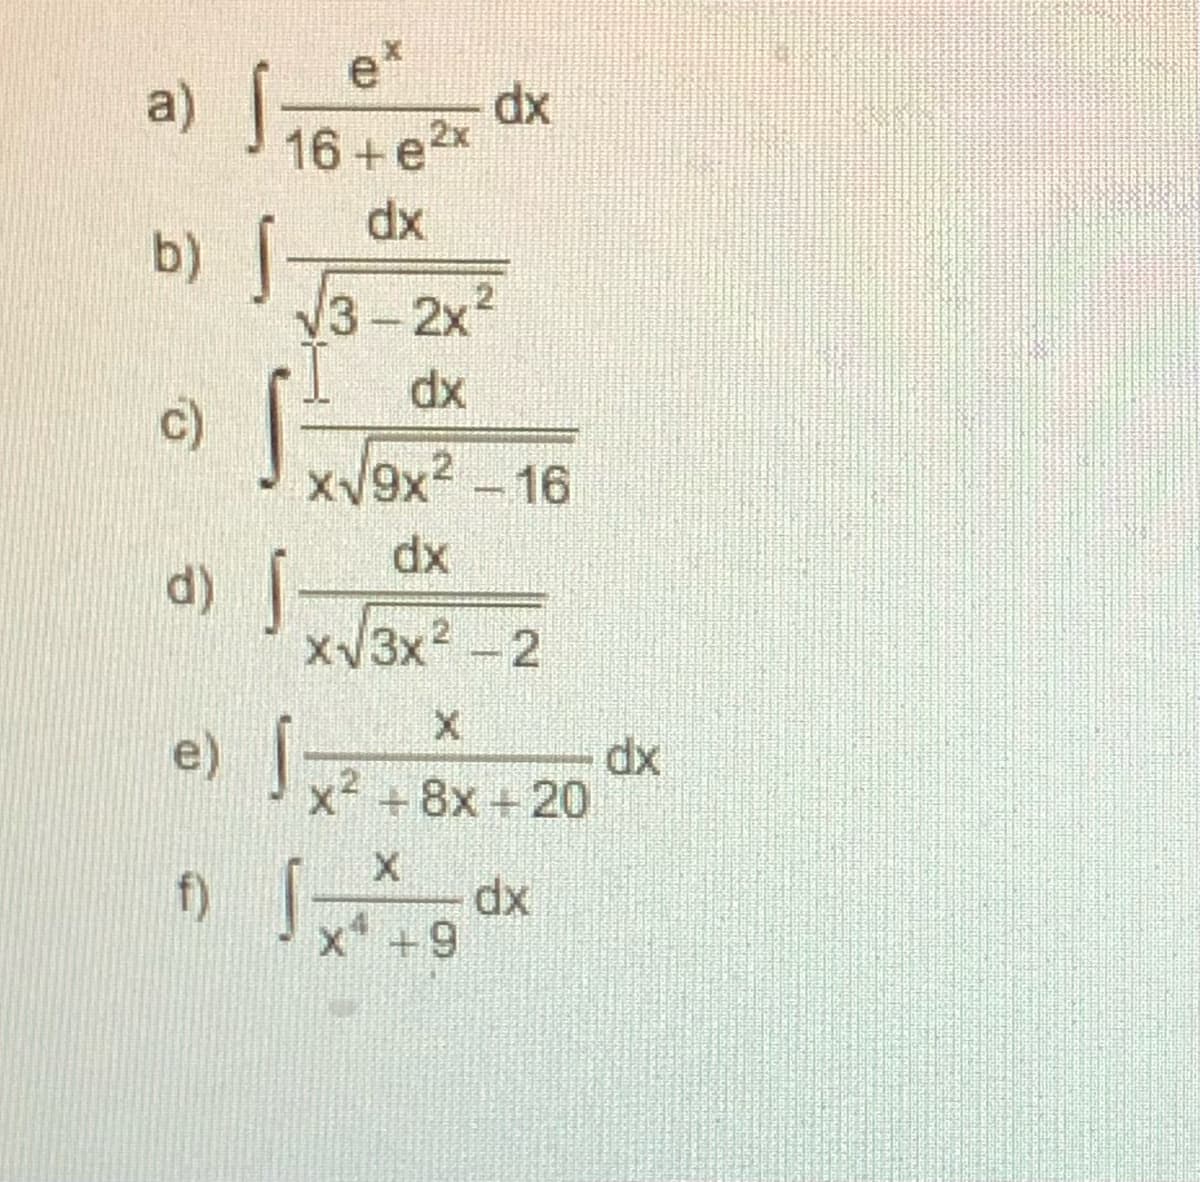 a) ववव
e*
dx
16 + e2x
xp
b) |
3-2x2
dx
c)
xV9x2-16
dx
xV3x2 -2
e) |
dx
x +8x + 20
dx
x +9
